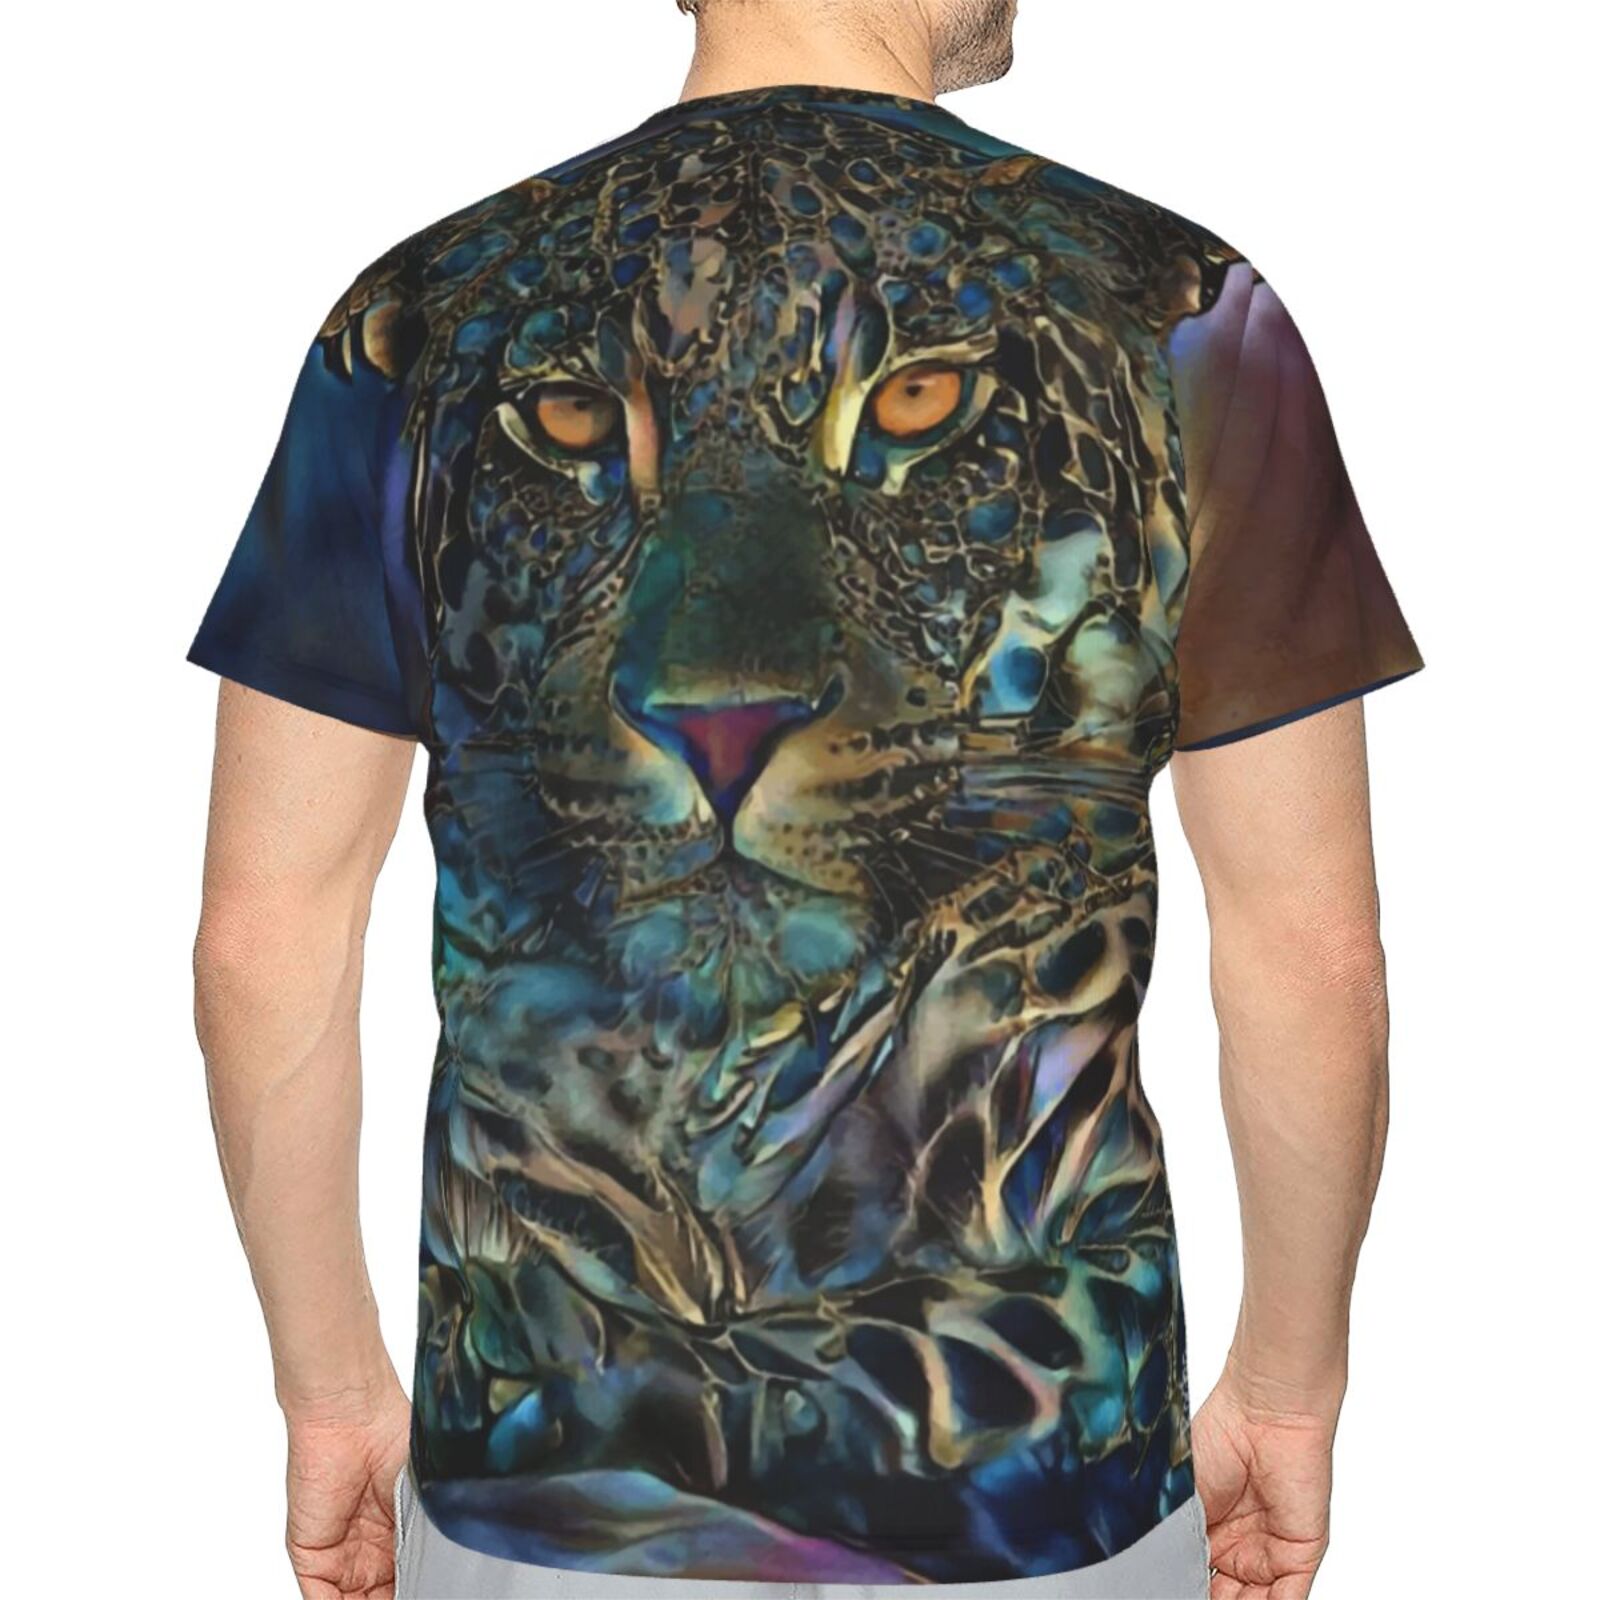 Laria Leopard Medien Mischen Elemente Klassisch T Shirt